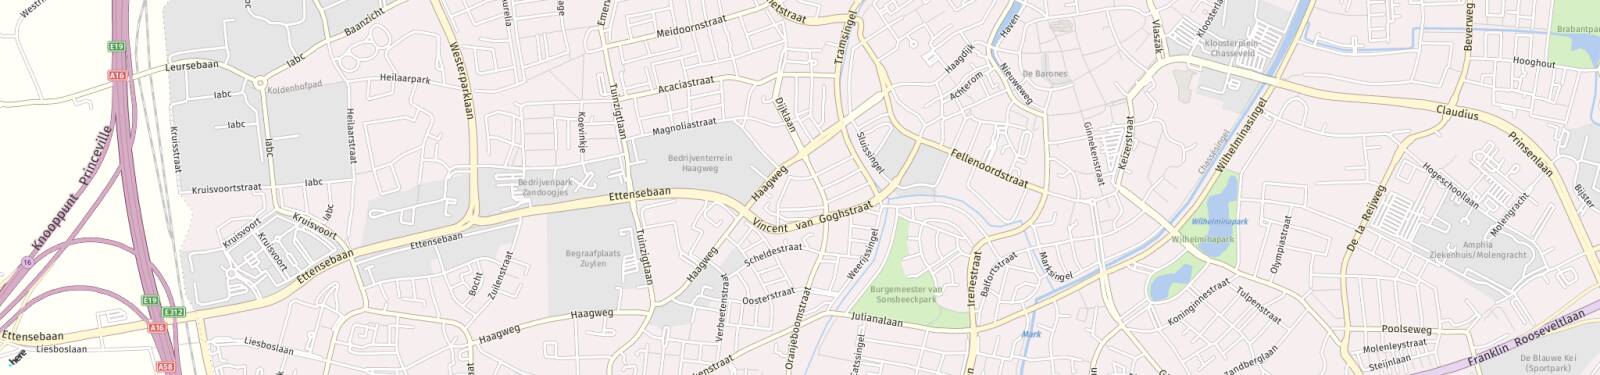 Kaart met locatie Appartement Dr. Jan IngenHouszplein